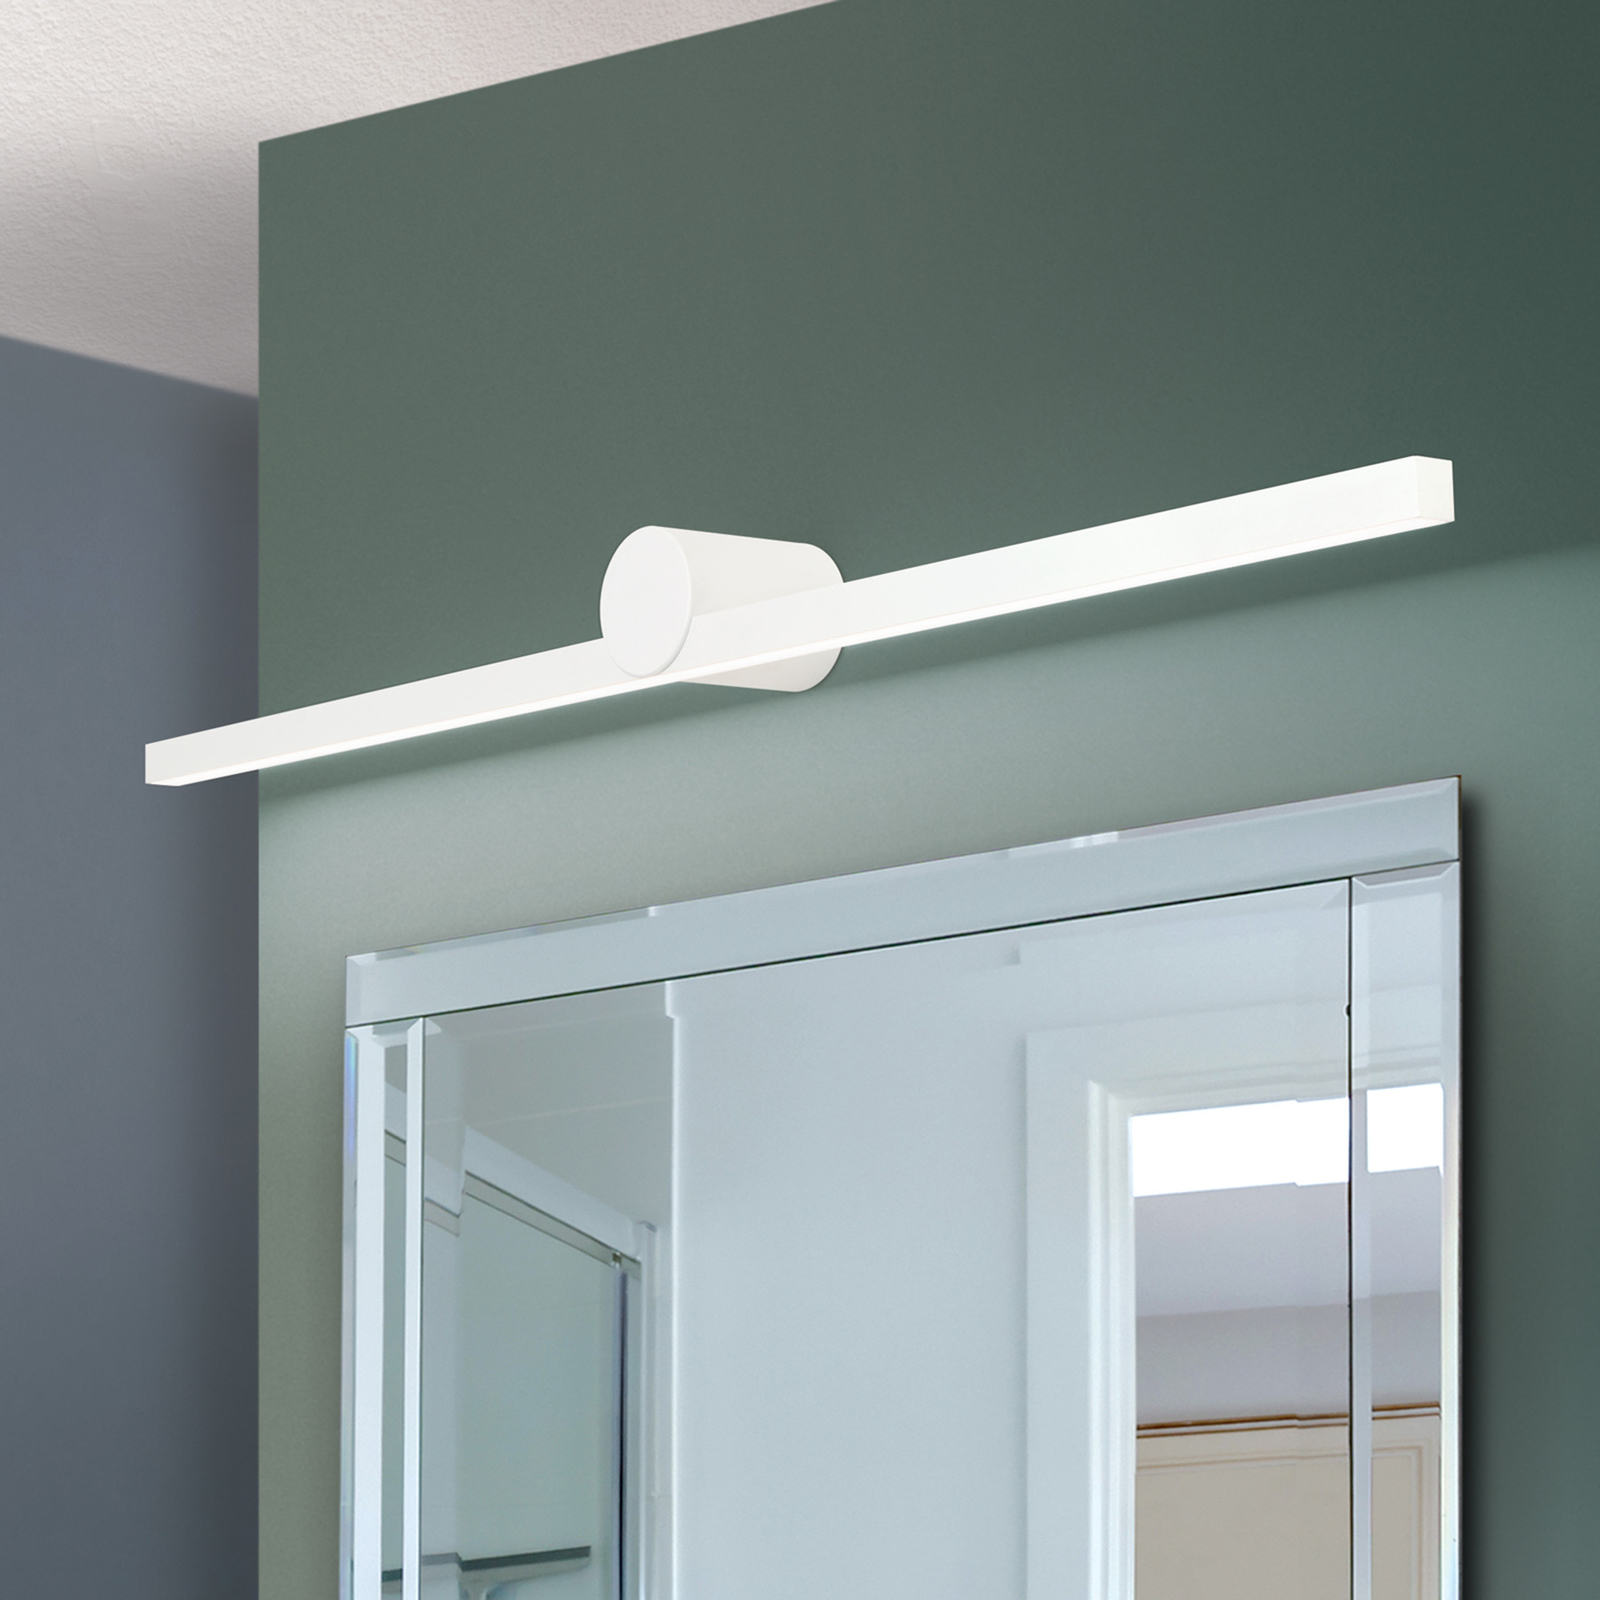 LED spiegellamp Beauty breedte 101cm, wit